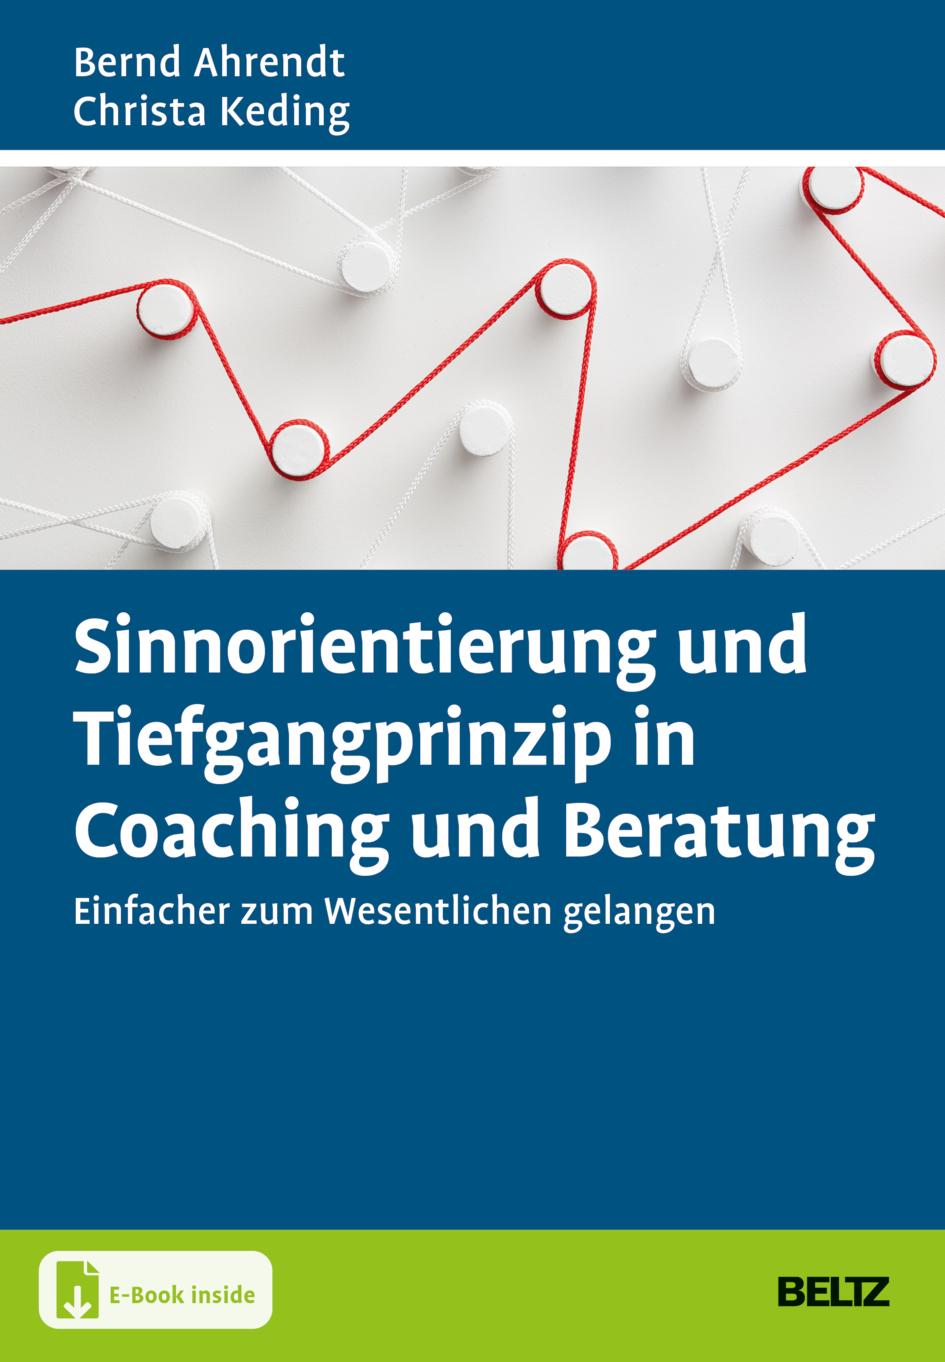 Kniha Sinnorientierung und Tiefgangprinzip in Coaching und Beratung Christa Keding